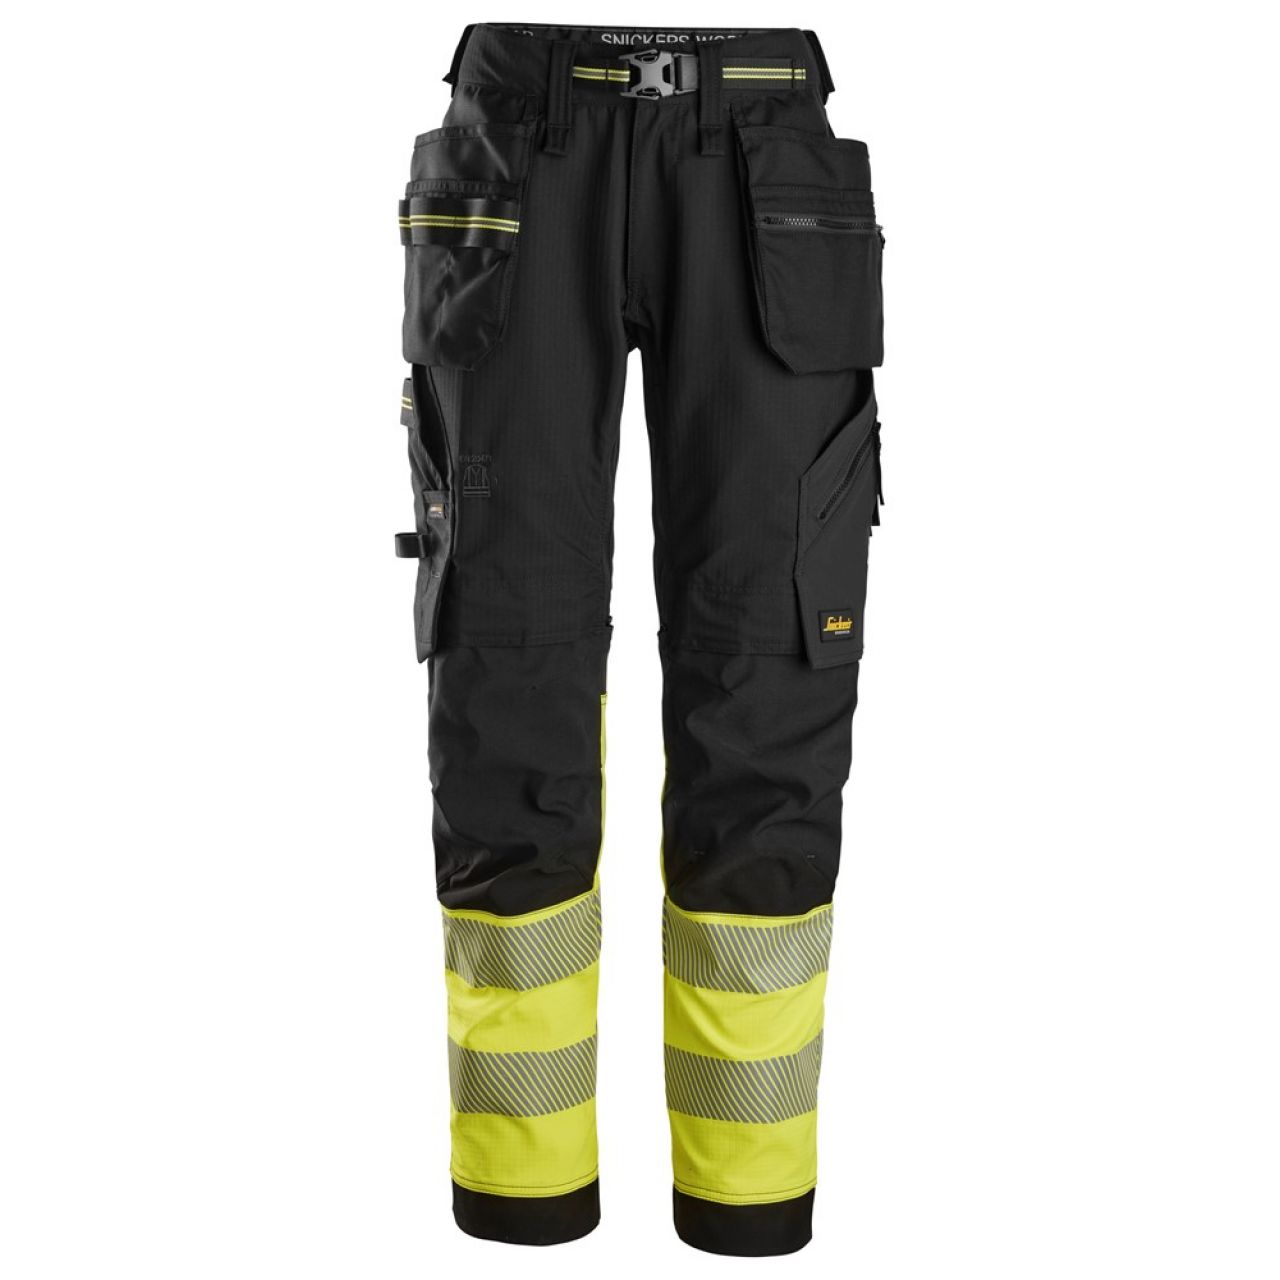 6934 Pantalones largos de trabajo elásticos de alta visibilidad clase 1 con bolsillos flotantes negro-amarillo talla 148